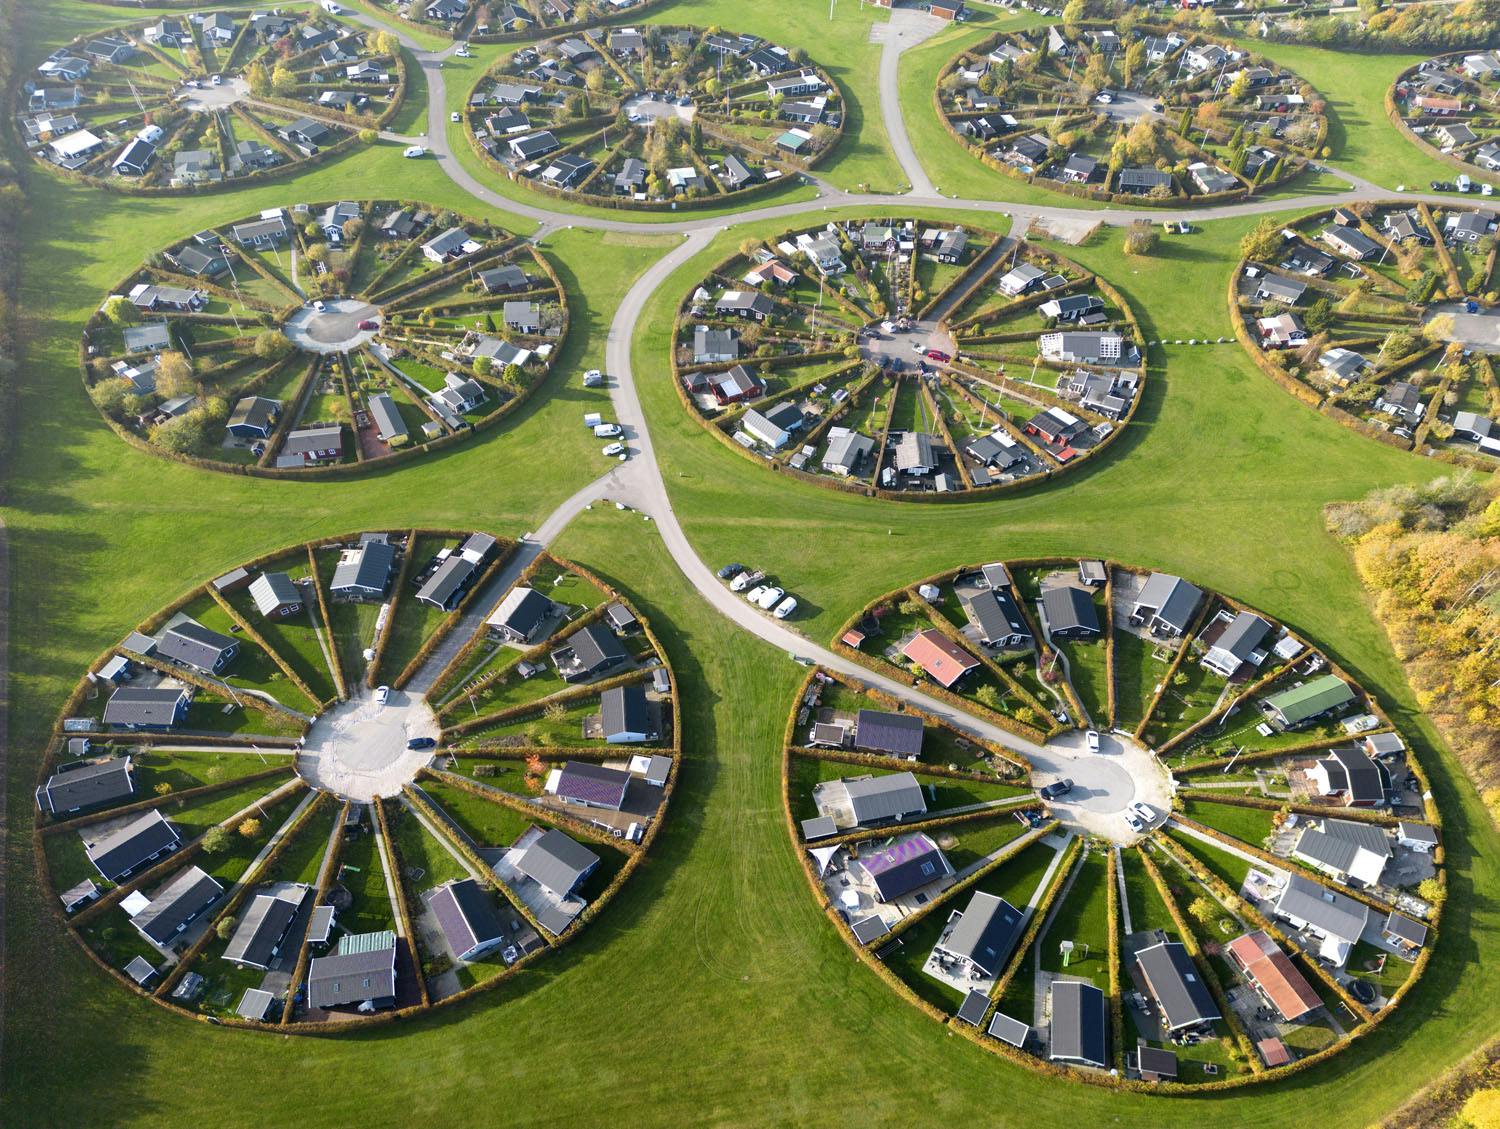 Copenhagen - Round gardens